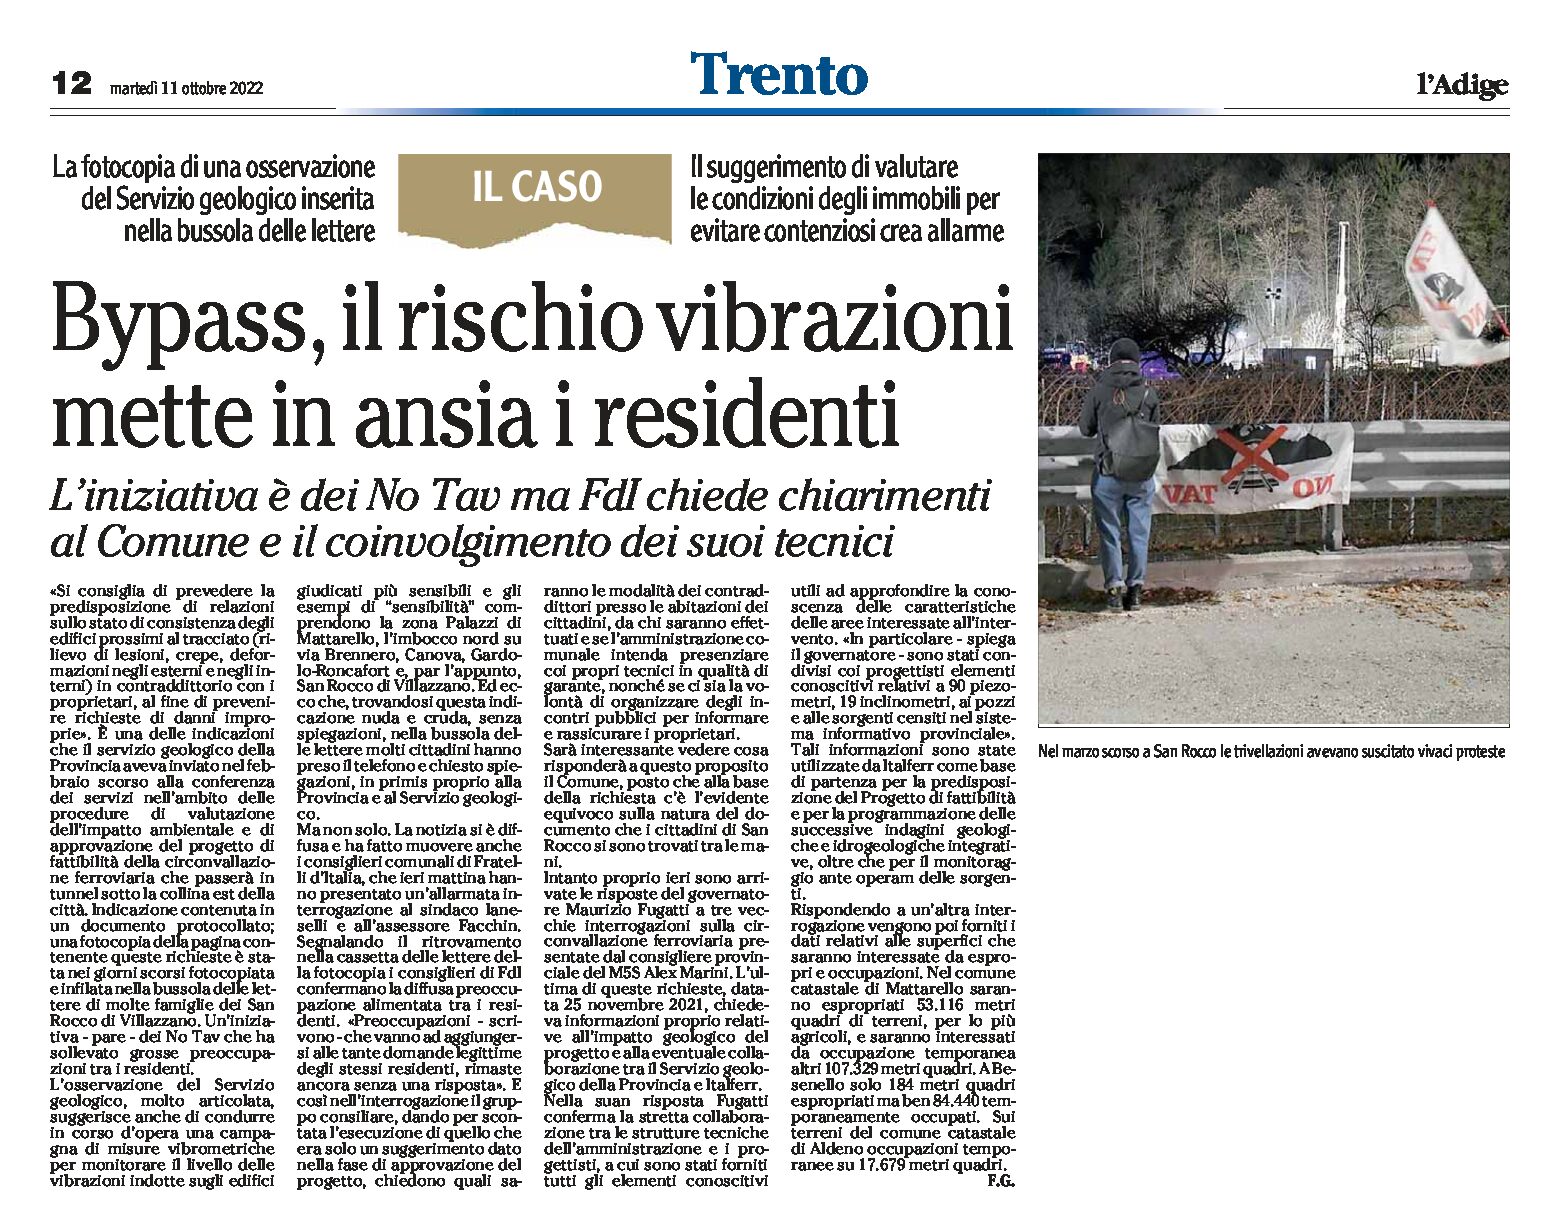 Trento, bypass: il rischio vibrazioni mette in ansia i residenti